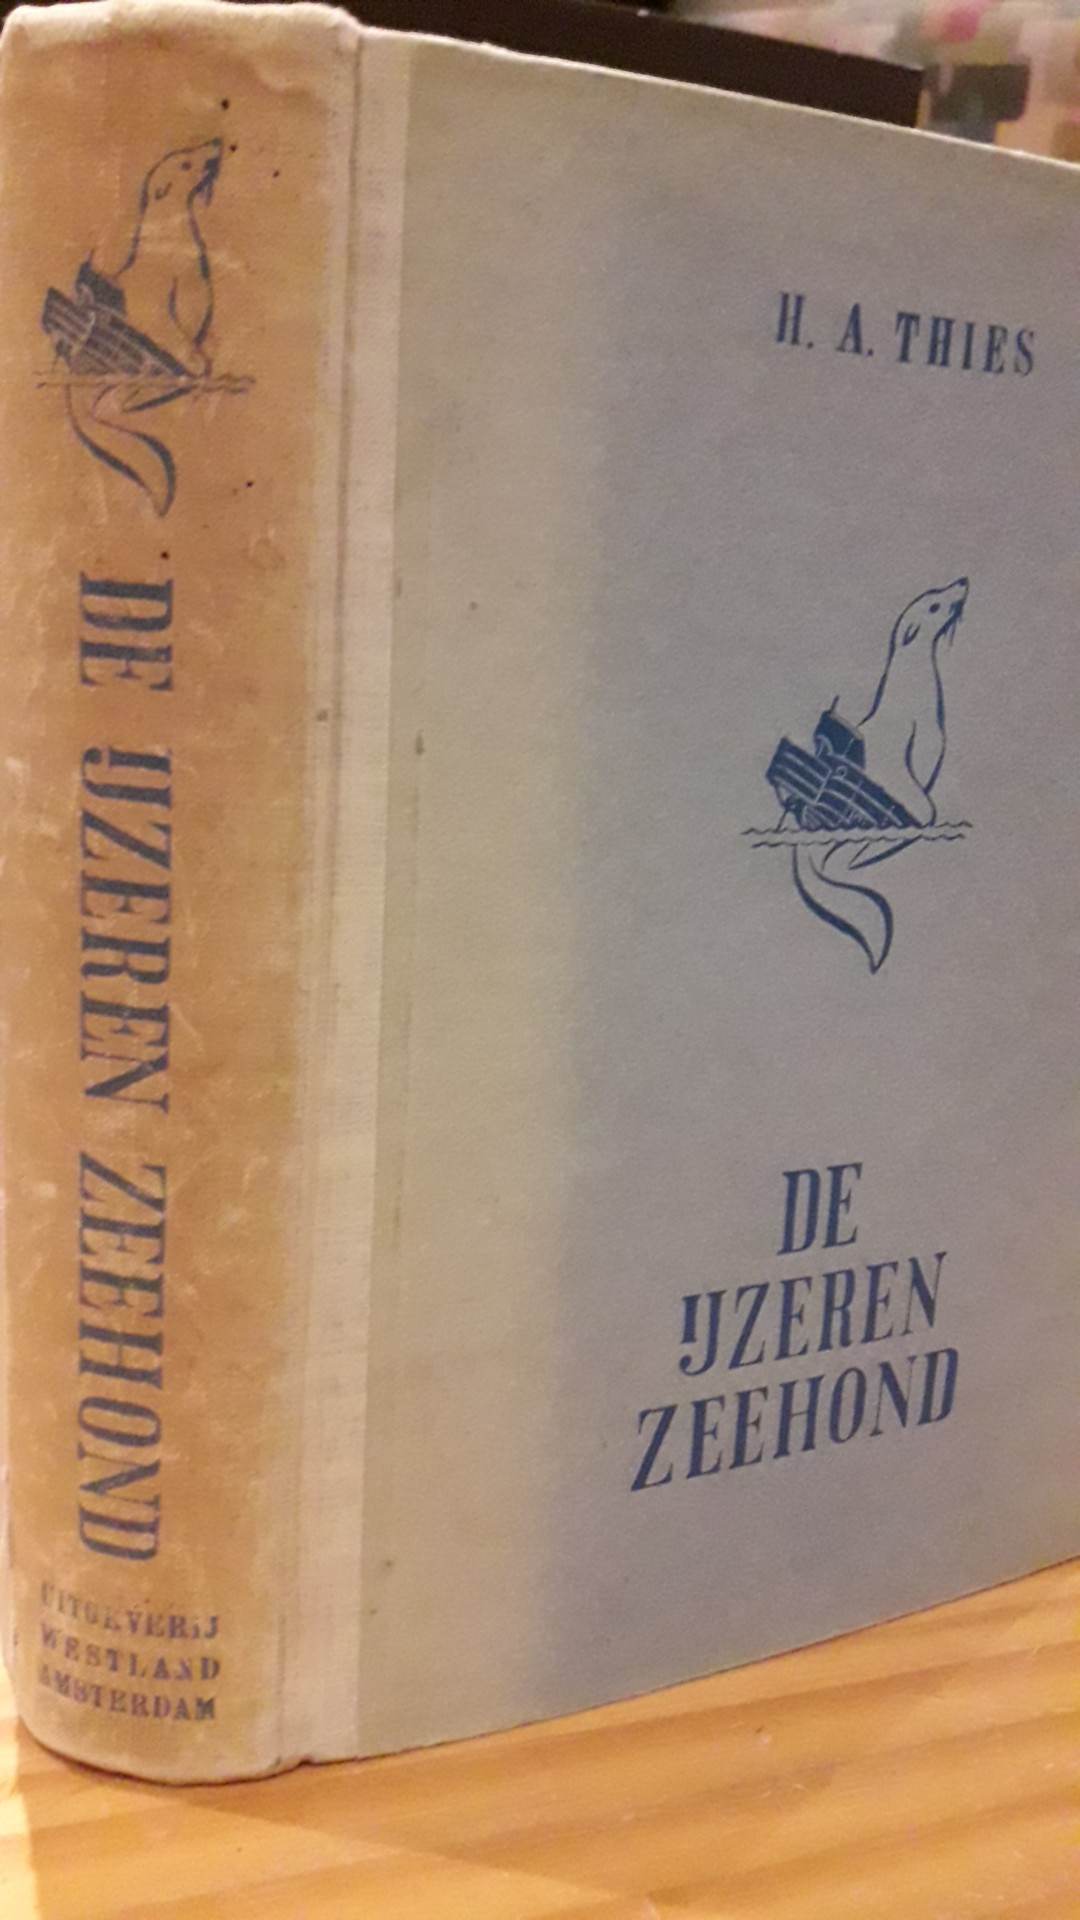 De IJzeren zeehond - 354 blz / WESTLAND 1943 Nederlandse collaboratie uitgeverij